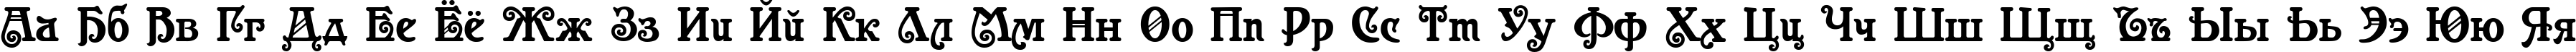 Пример написания русского алфавита шрифтом Casanova